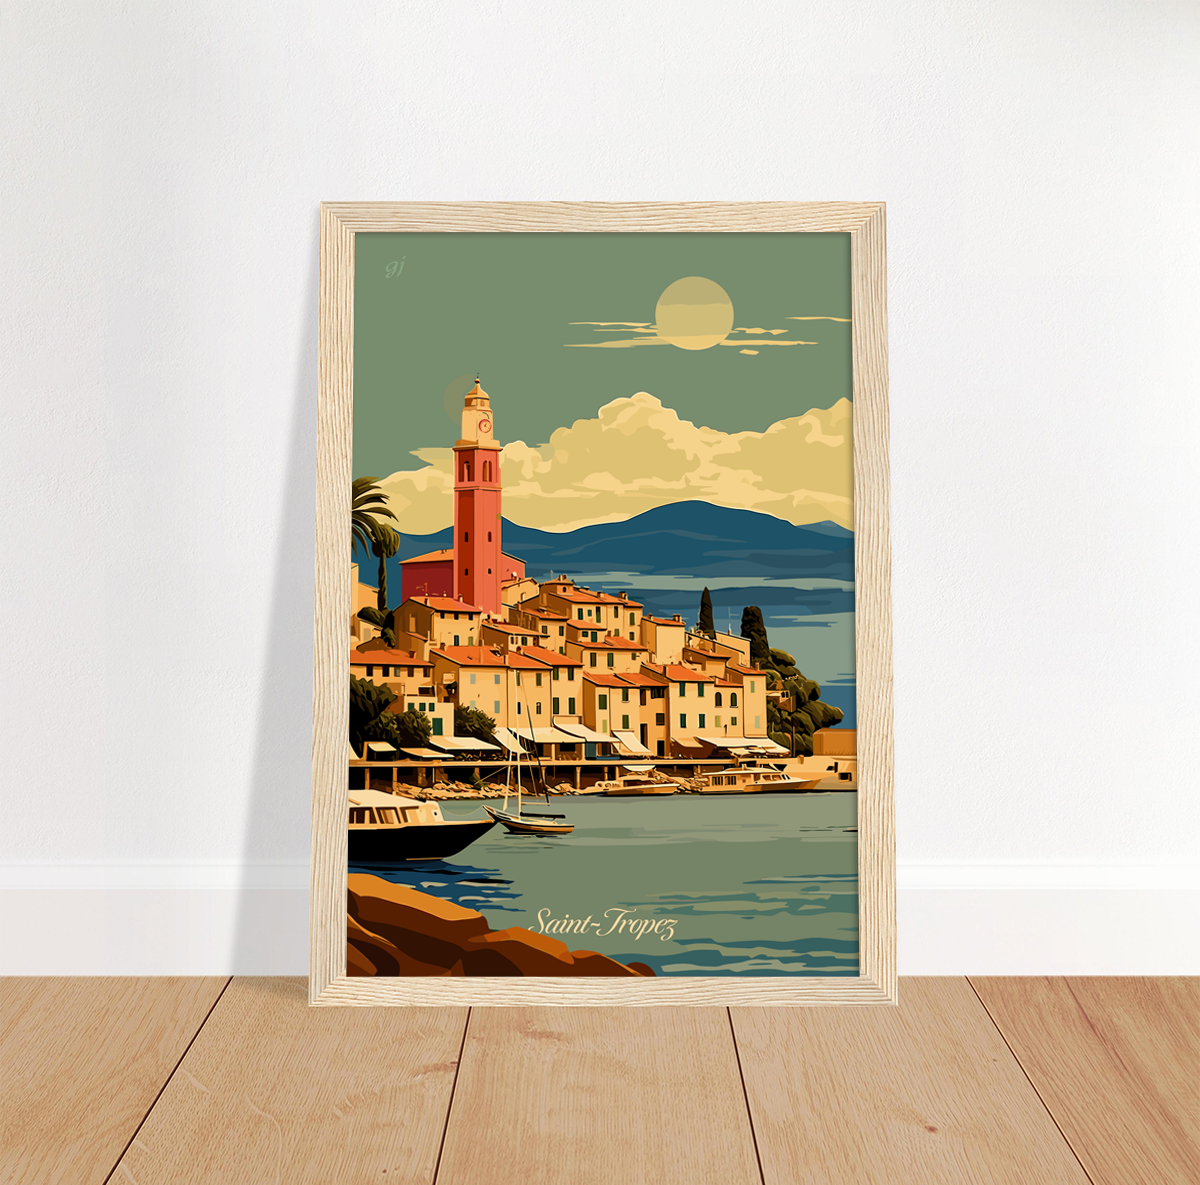 Saint-Tropez poster by bon voyage design